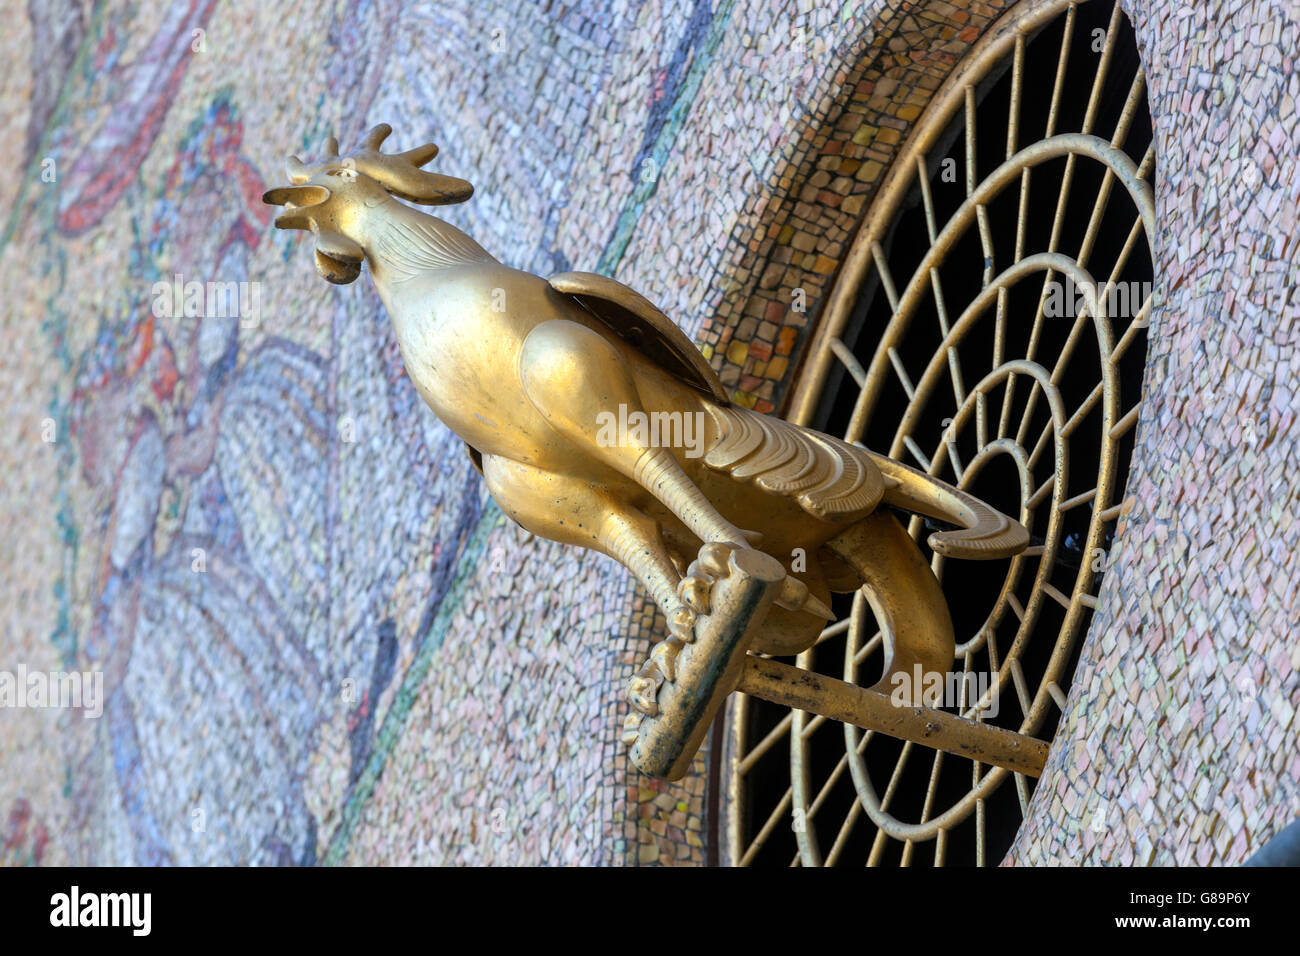 Horloge astronomique d'Olomouc du XVe siècle.Sa forme actuelle est l'esprit de réalisme socialiste.Rooster Olomouc, Moravie du Sud, République tchèque Banque D'Images